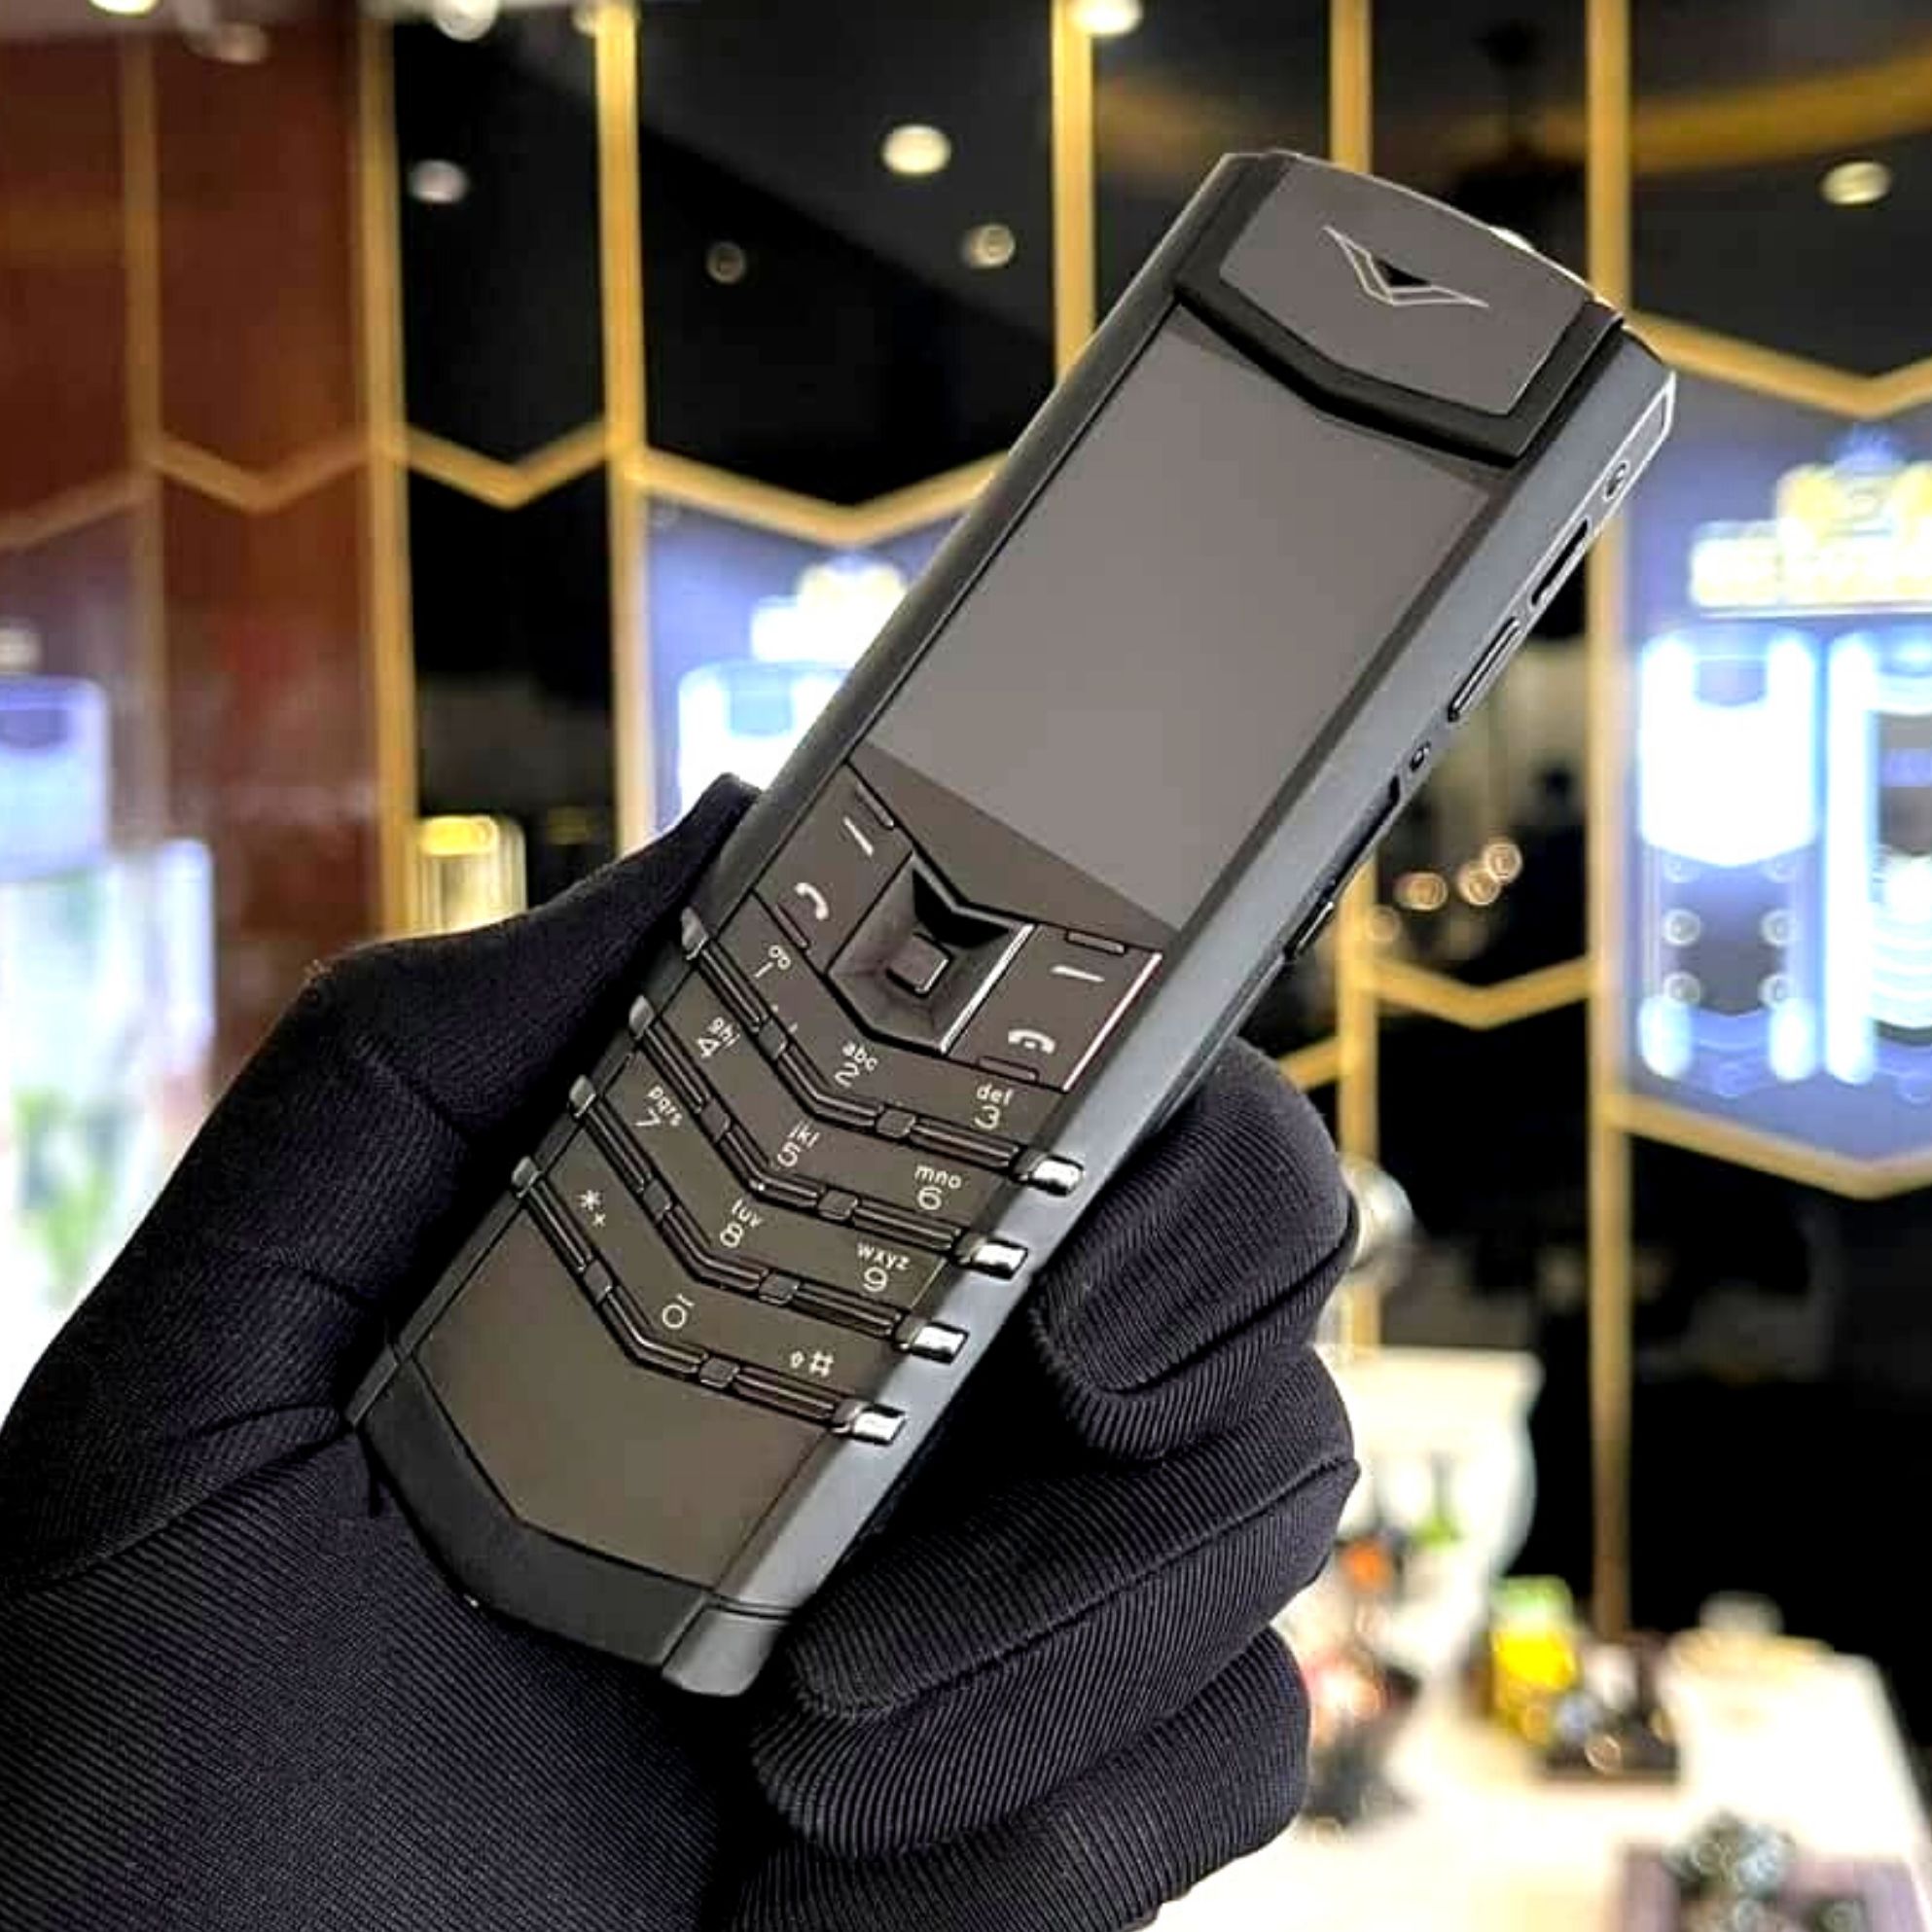 Điện thoại vertu 1sim loại xịn siêu sang siêu đẳng cấp tặng kèm zippo điện thoại doanh nhân được nhập fullbox vertu 1sim cao cấp giá rẻ điện thoại vetu 1-1 cao cấp - vertu màu đen minet